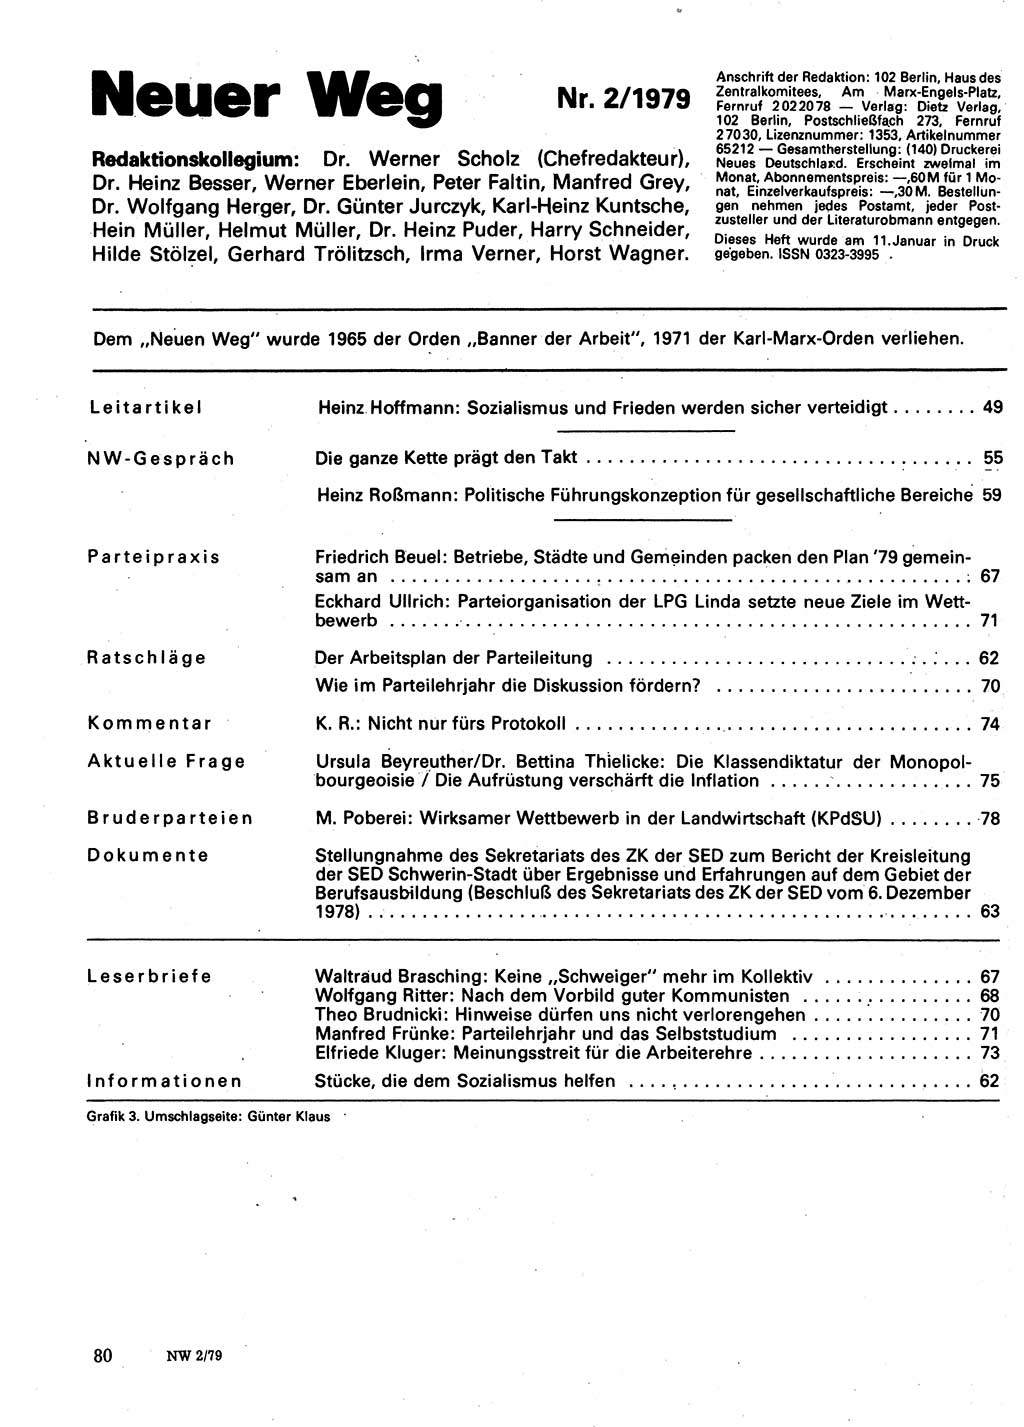 Neuer Weg (NW), Organ des Zentralkomitees (ZK) der SED (Sozialistische Einheitspartei Deutschlands) für Fragen des Parteilebens, 34. Jahrgang [Deutsche Demokratische Republik (DDR)] 1979, Seite 80 (NW ZK SED DDR 1979, S. 80)